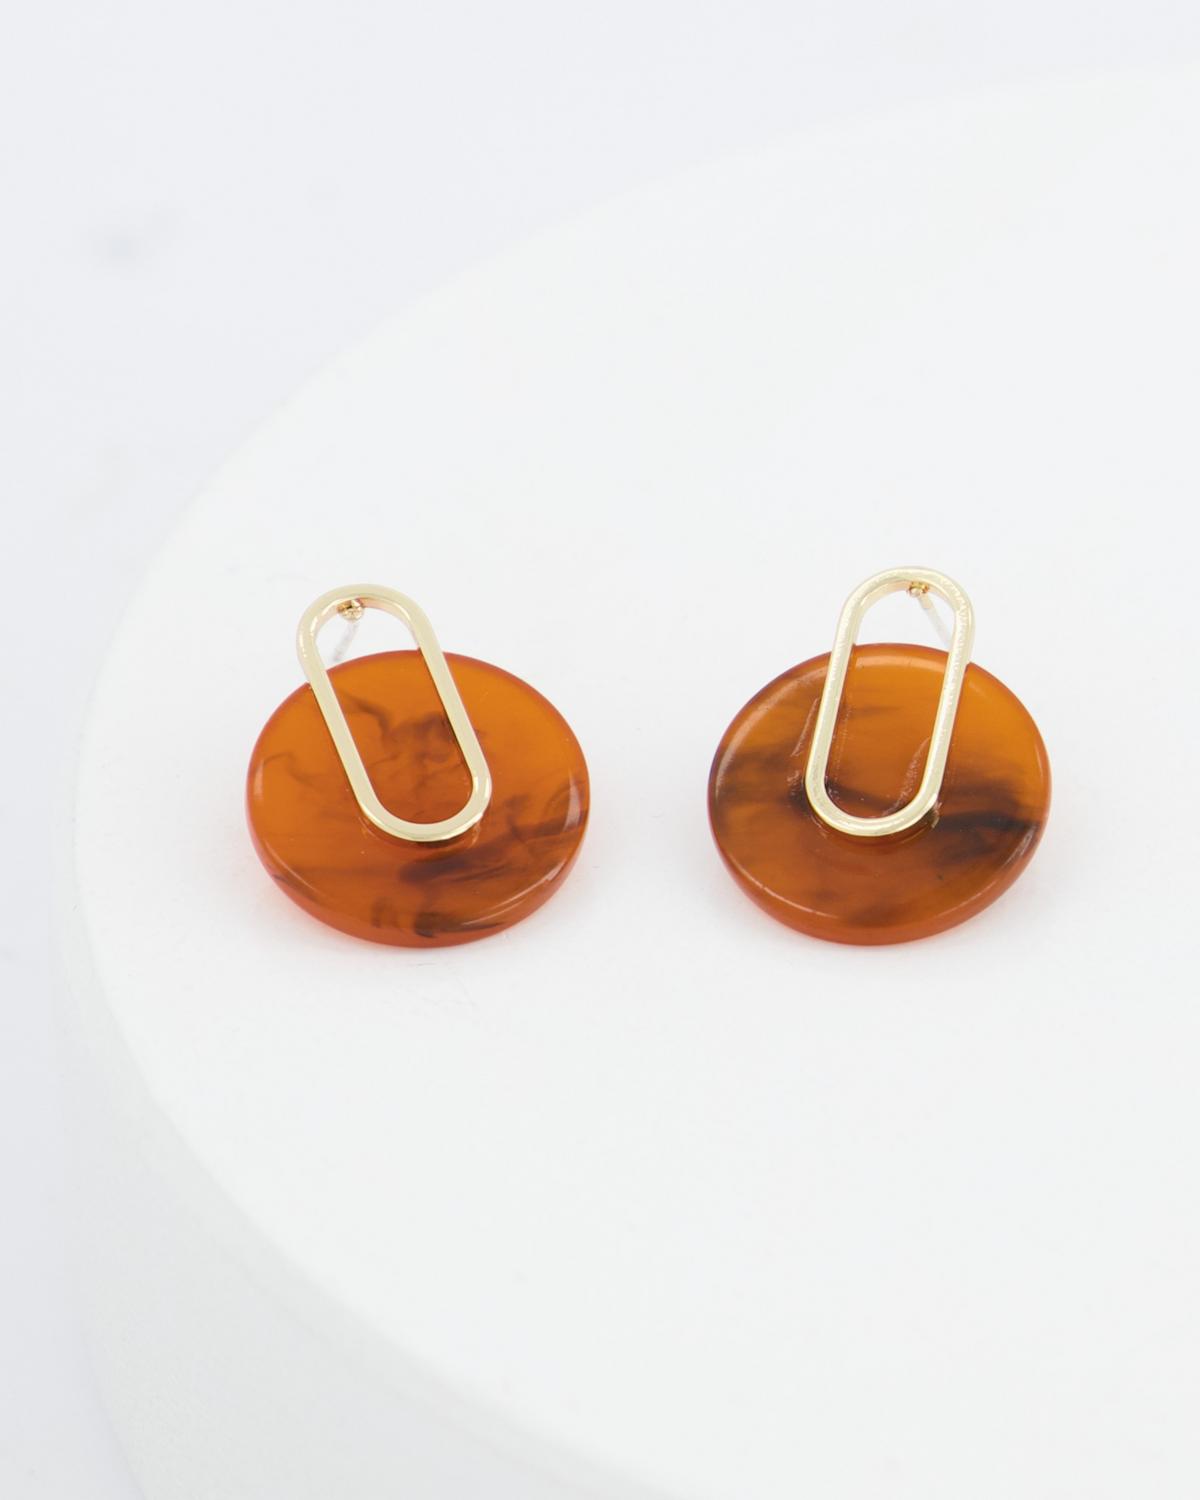 Resin Disk & Oval Ring Drop Earrings -  Brown